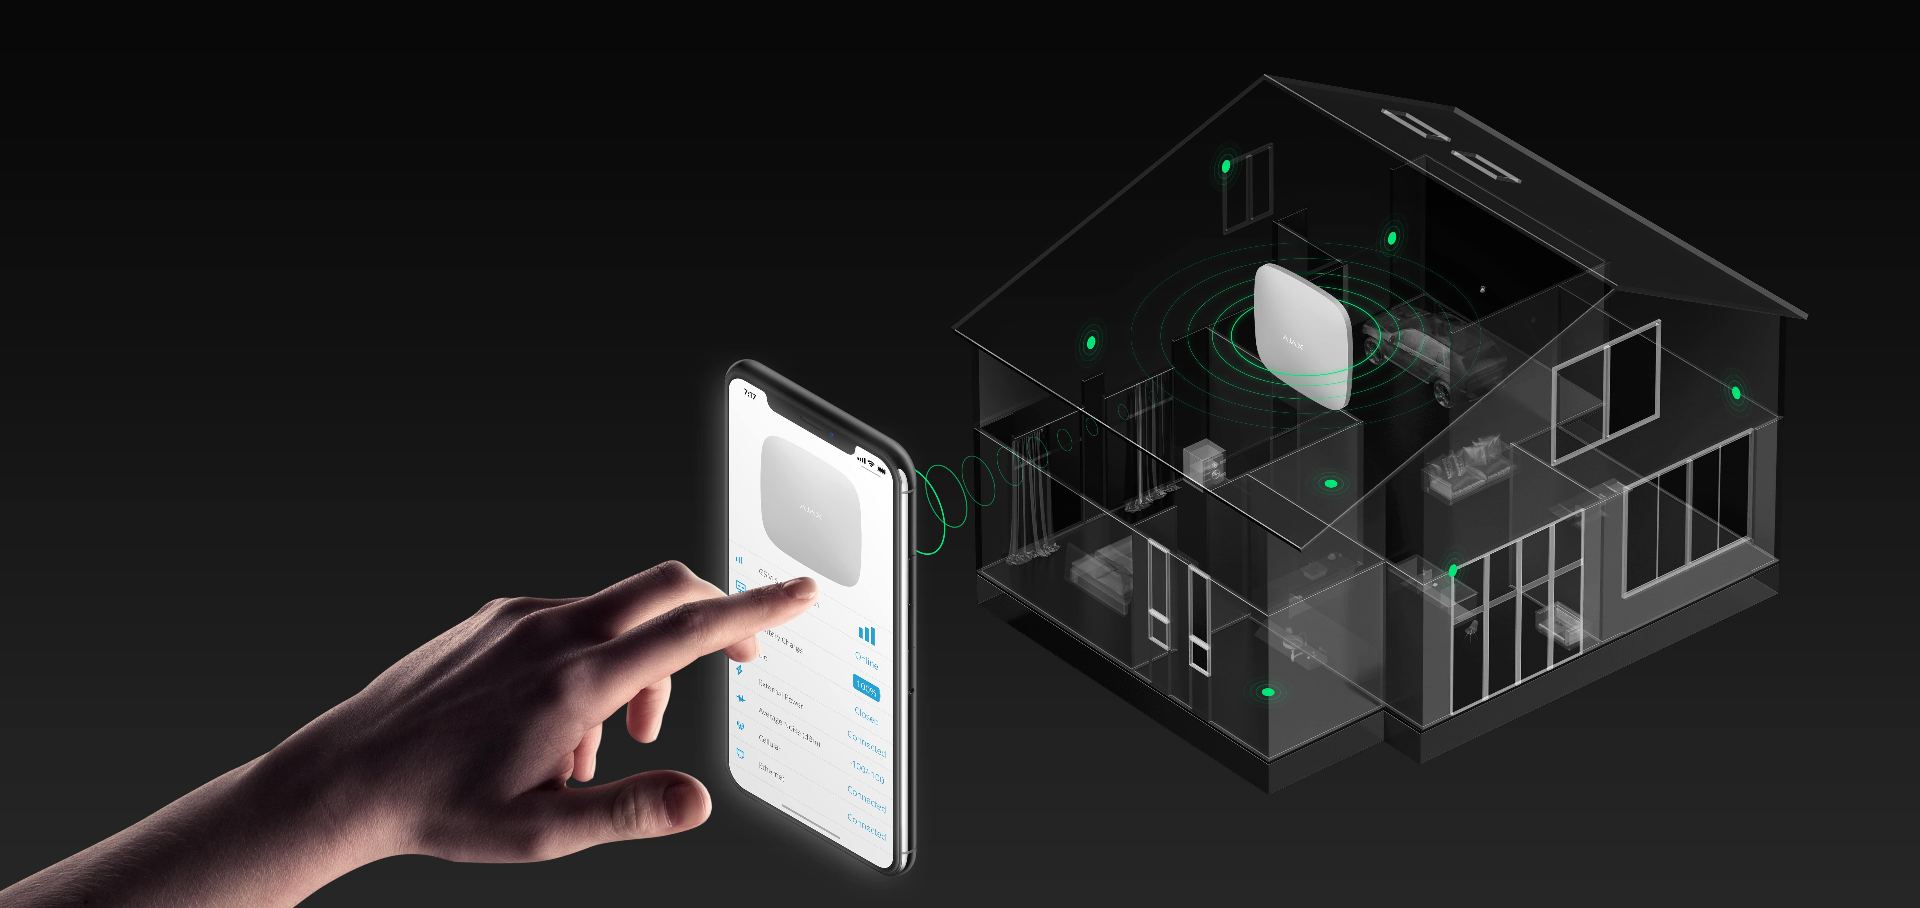 Transformă-ți casa într-un inteligentă, controlează sistemul de securitate și automatizările din interiorul casei, din aplicația de pe telefon